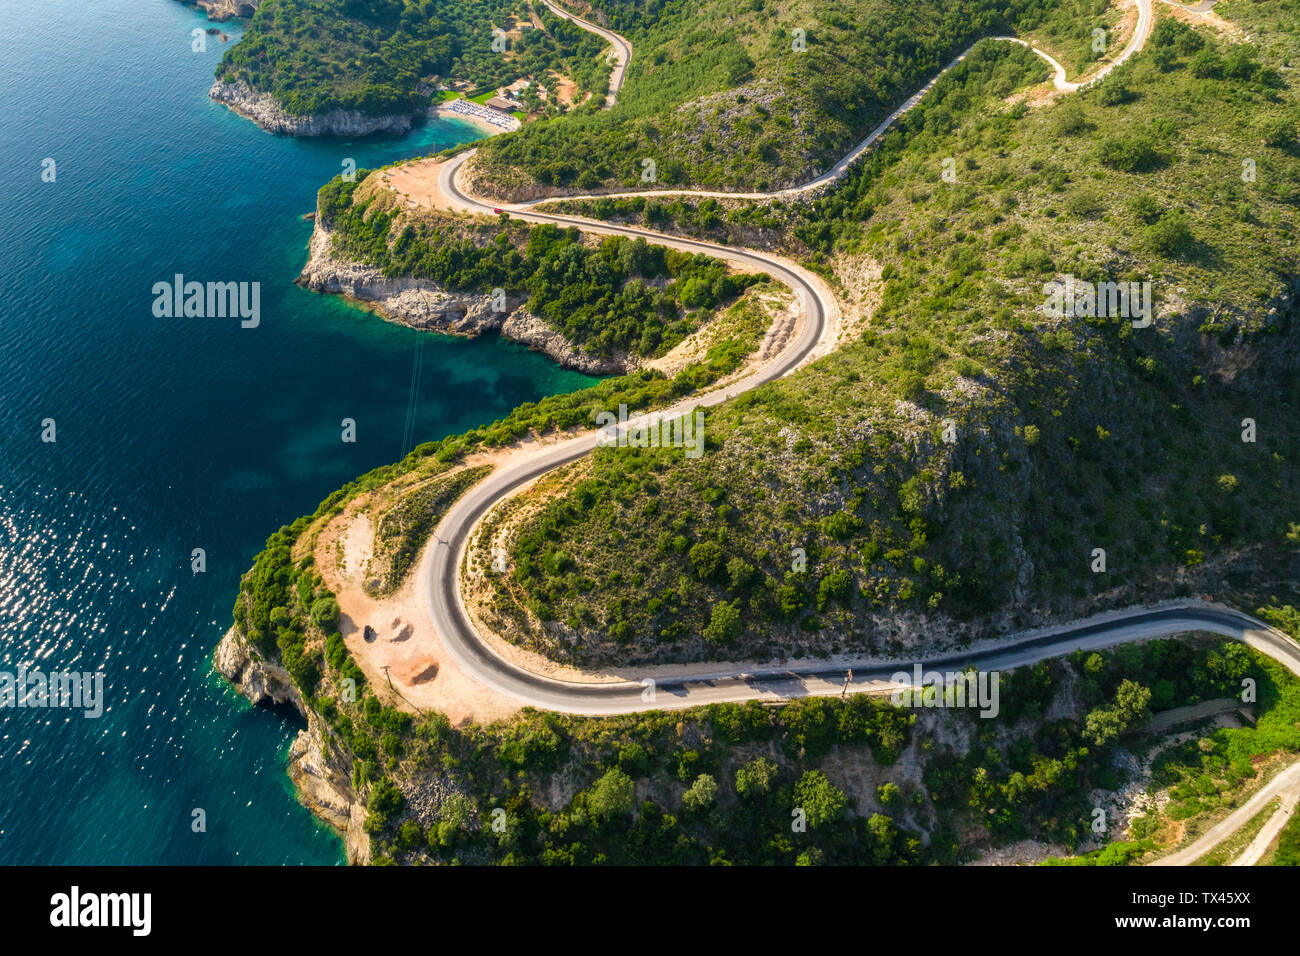 Greece, aerial view of coastal road at Igoumenitsa Stock Photo